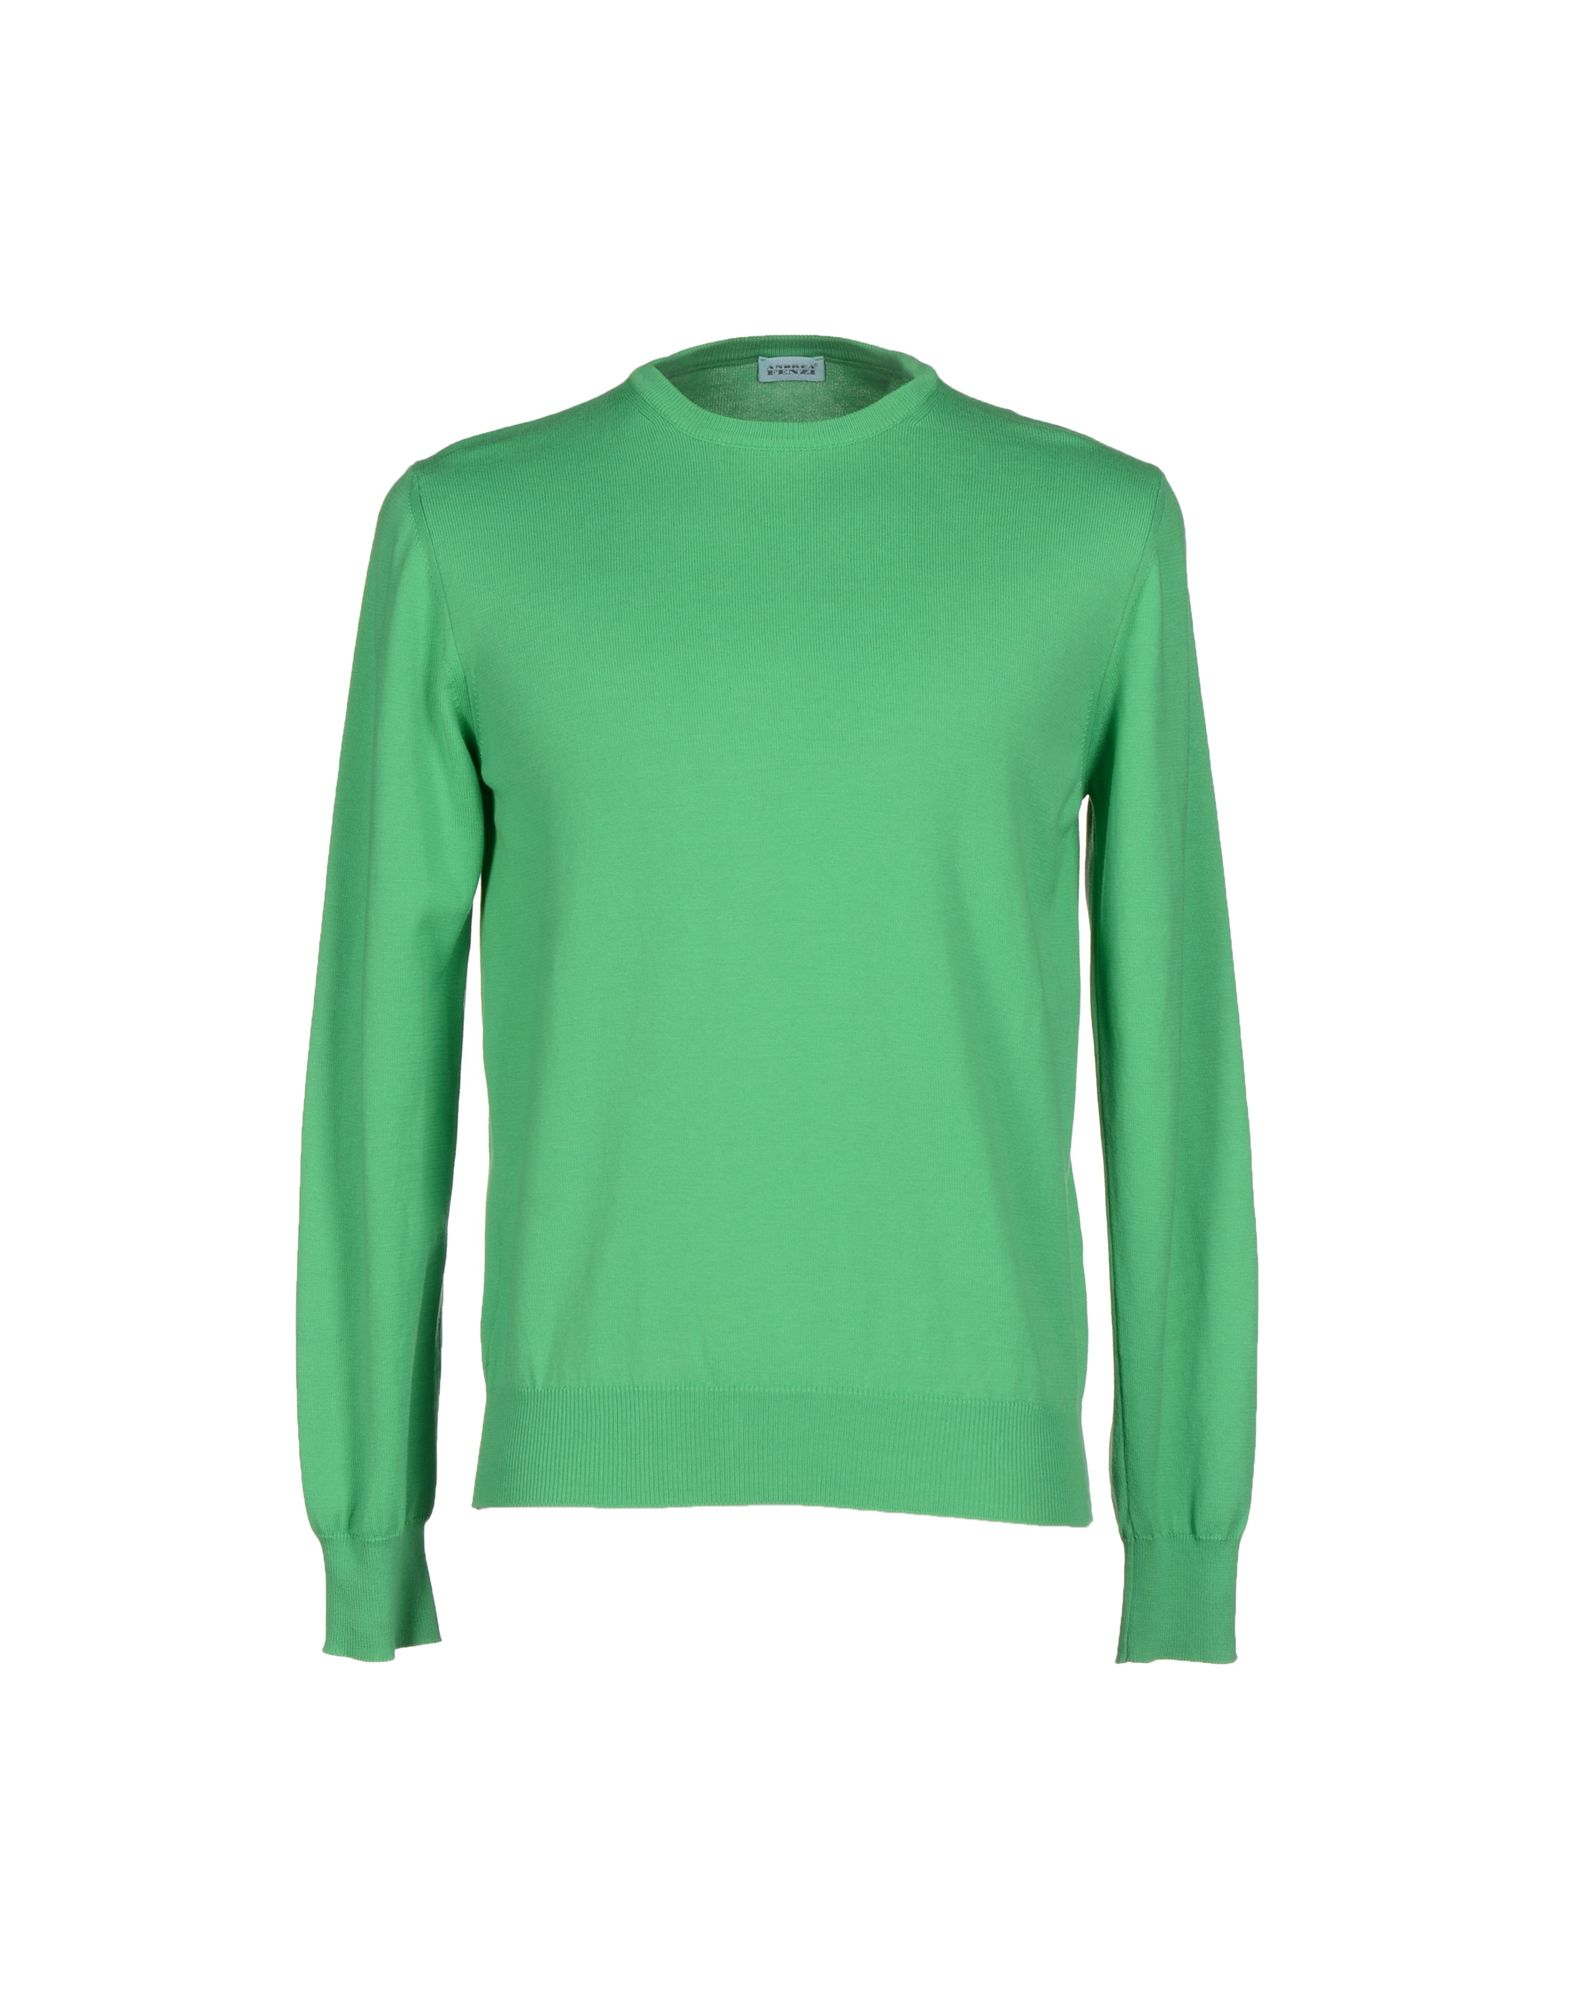 Andrea Fenzi Sweater in Green for Men - Lyst